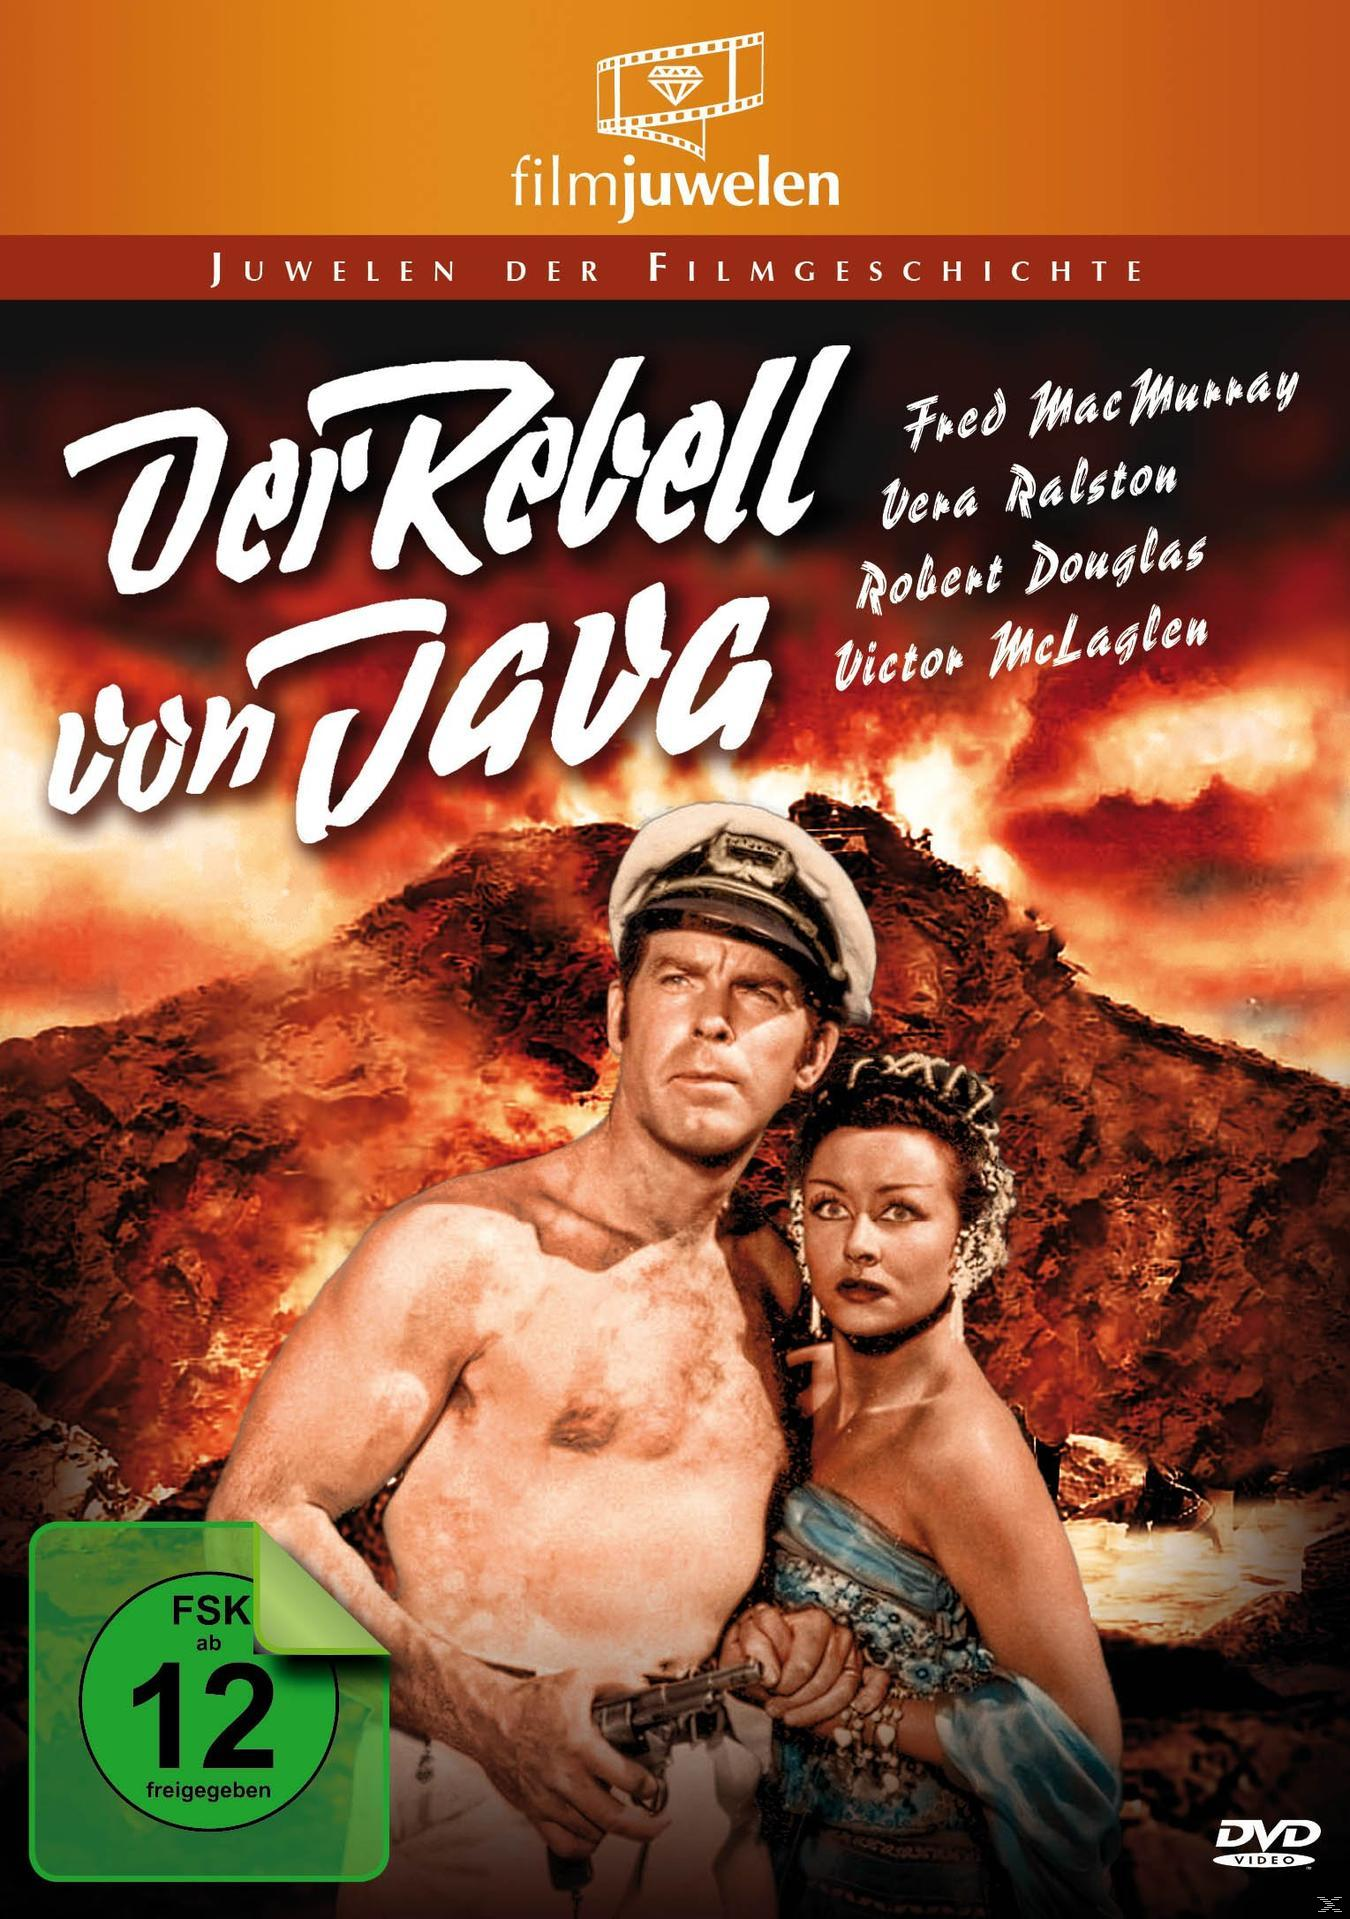 Der Rebell Von DVD Java